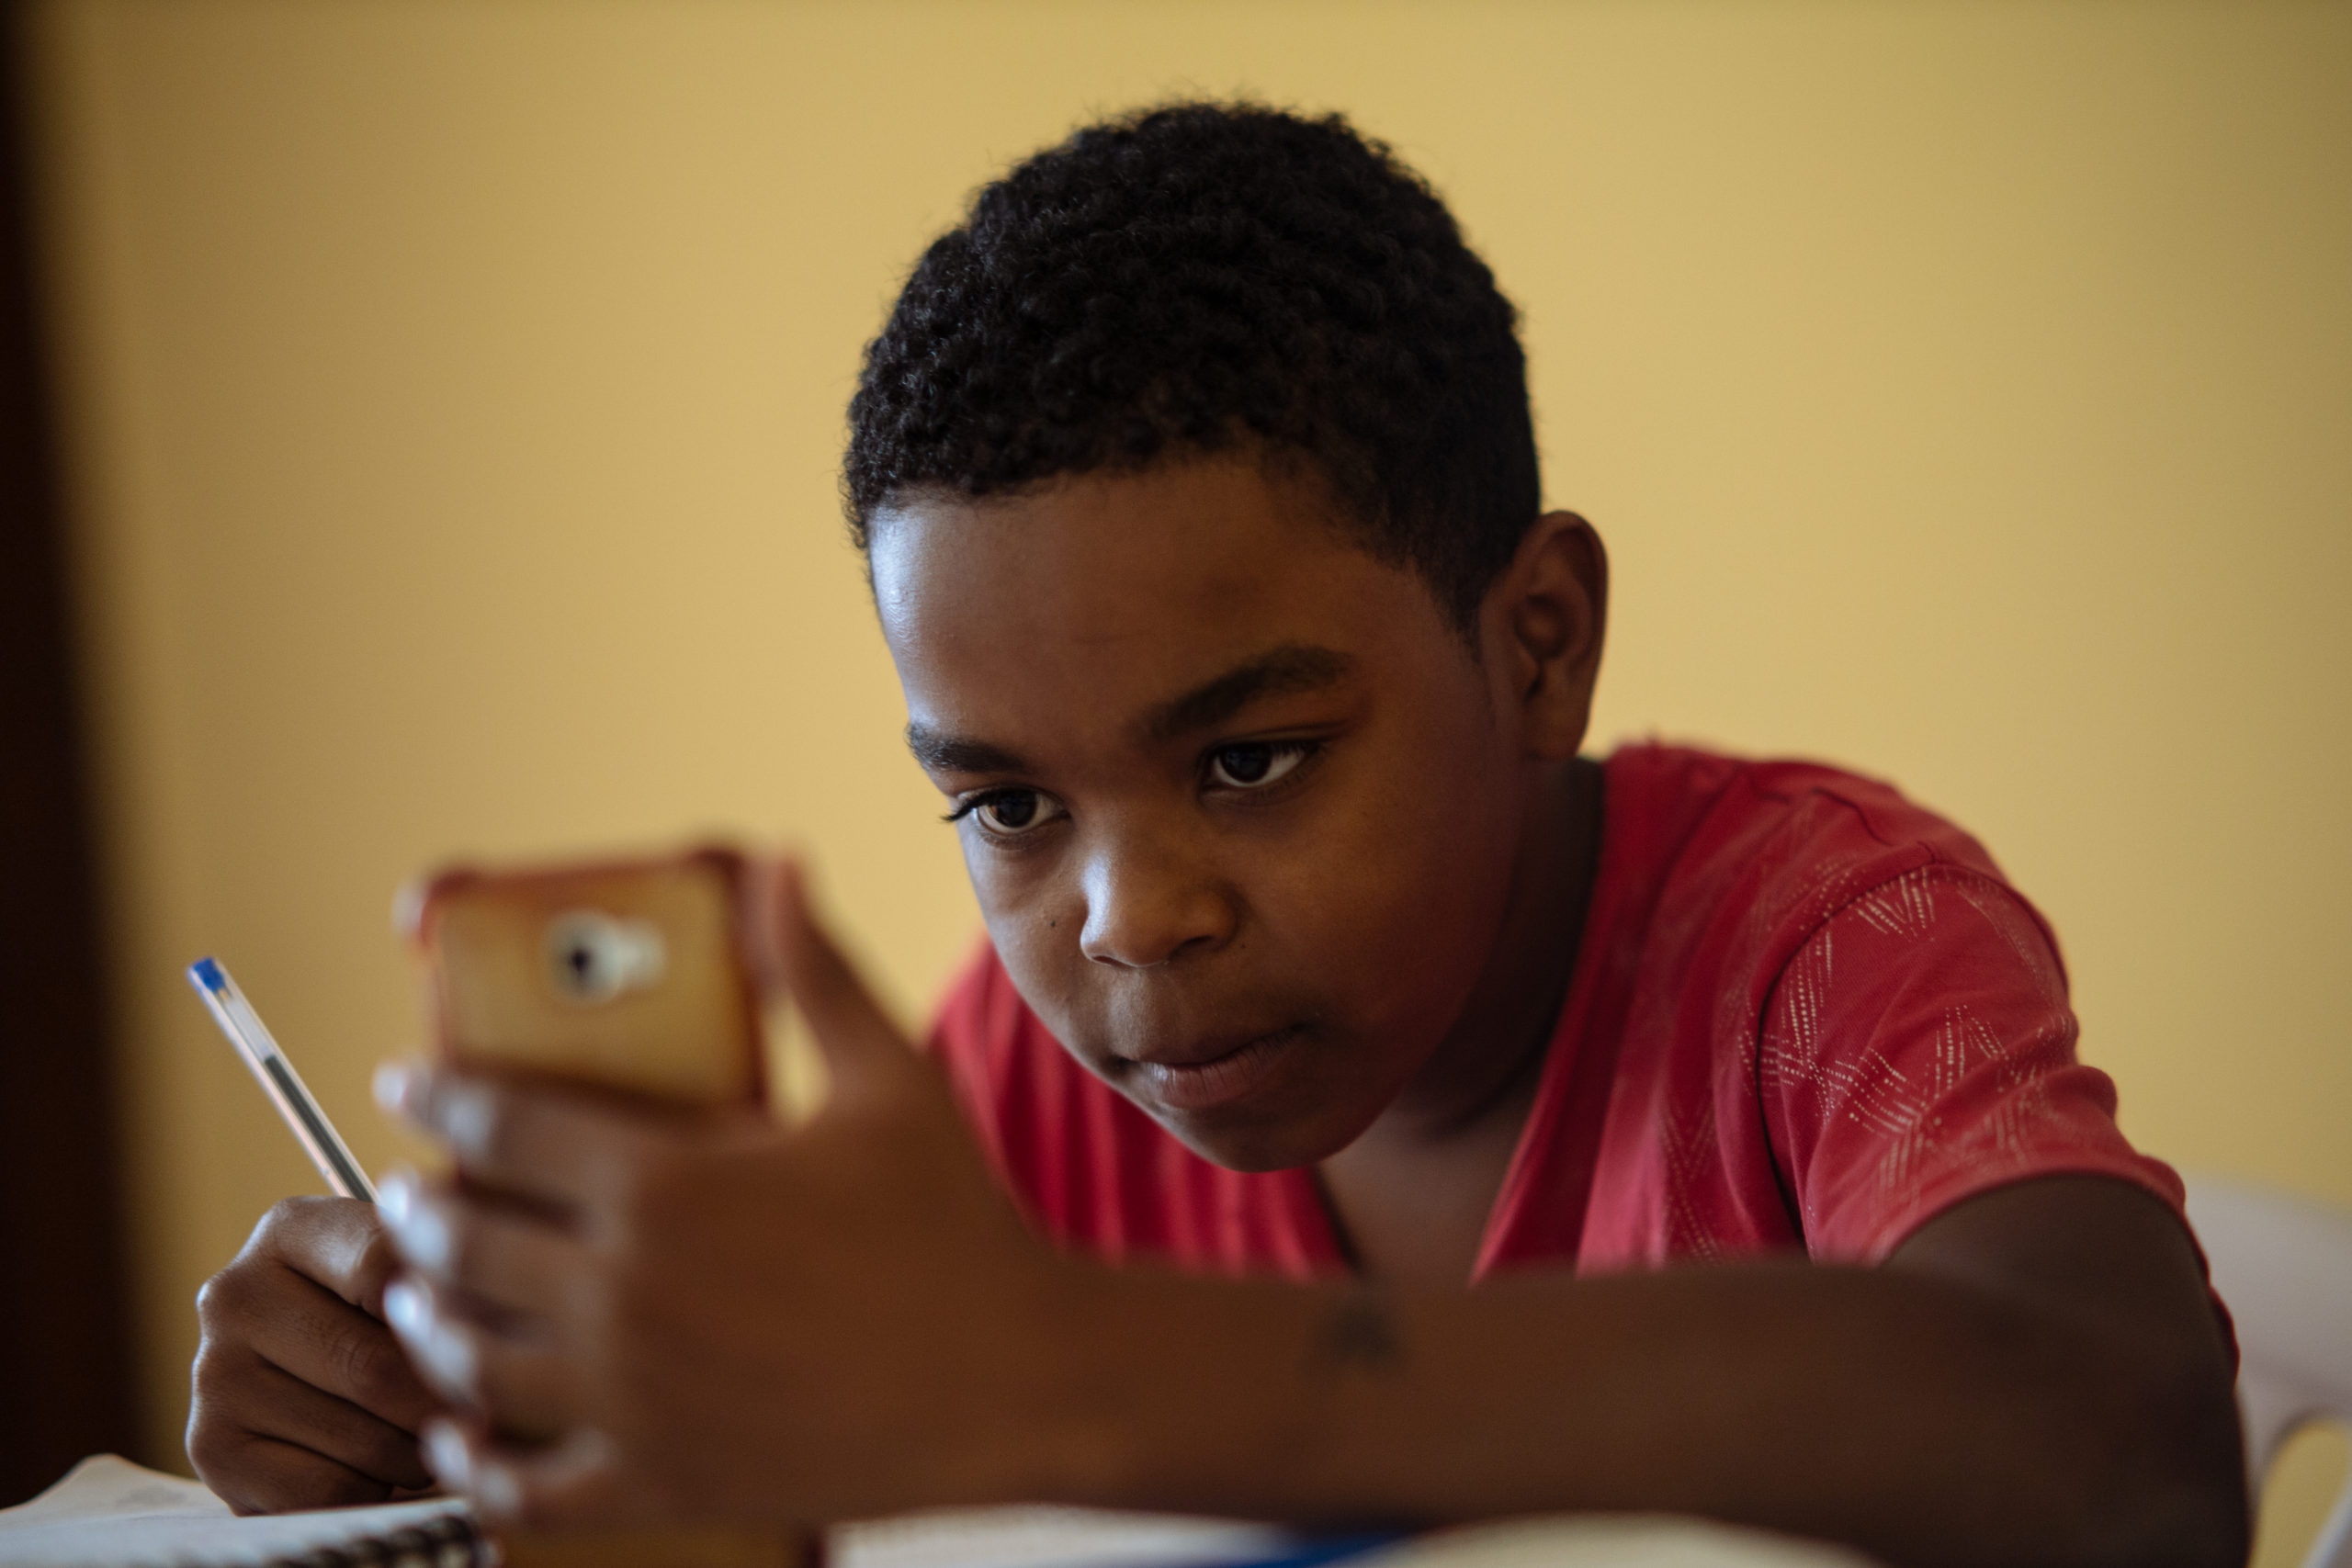 Aaron, 12, y Cristel, 8, son hermanos que viven en la ciudad de Ibarra, afiliados a los programas de ChildFund. Junto a su madre, Andrea Tadeo, se organizan para usar el internet que tienen en casa para realizar tareas escolares en línea y en sus ratos libres juegan.